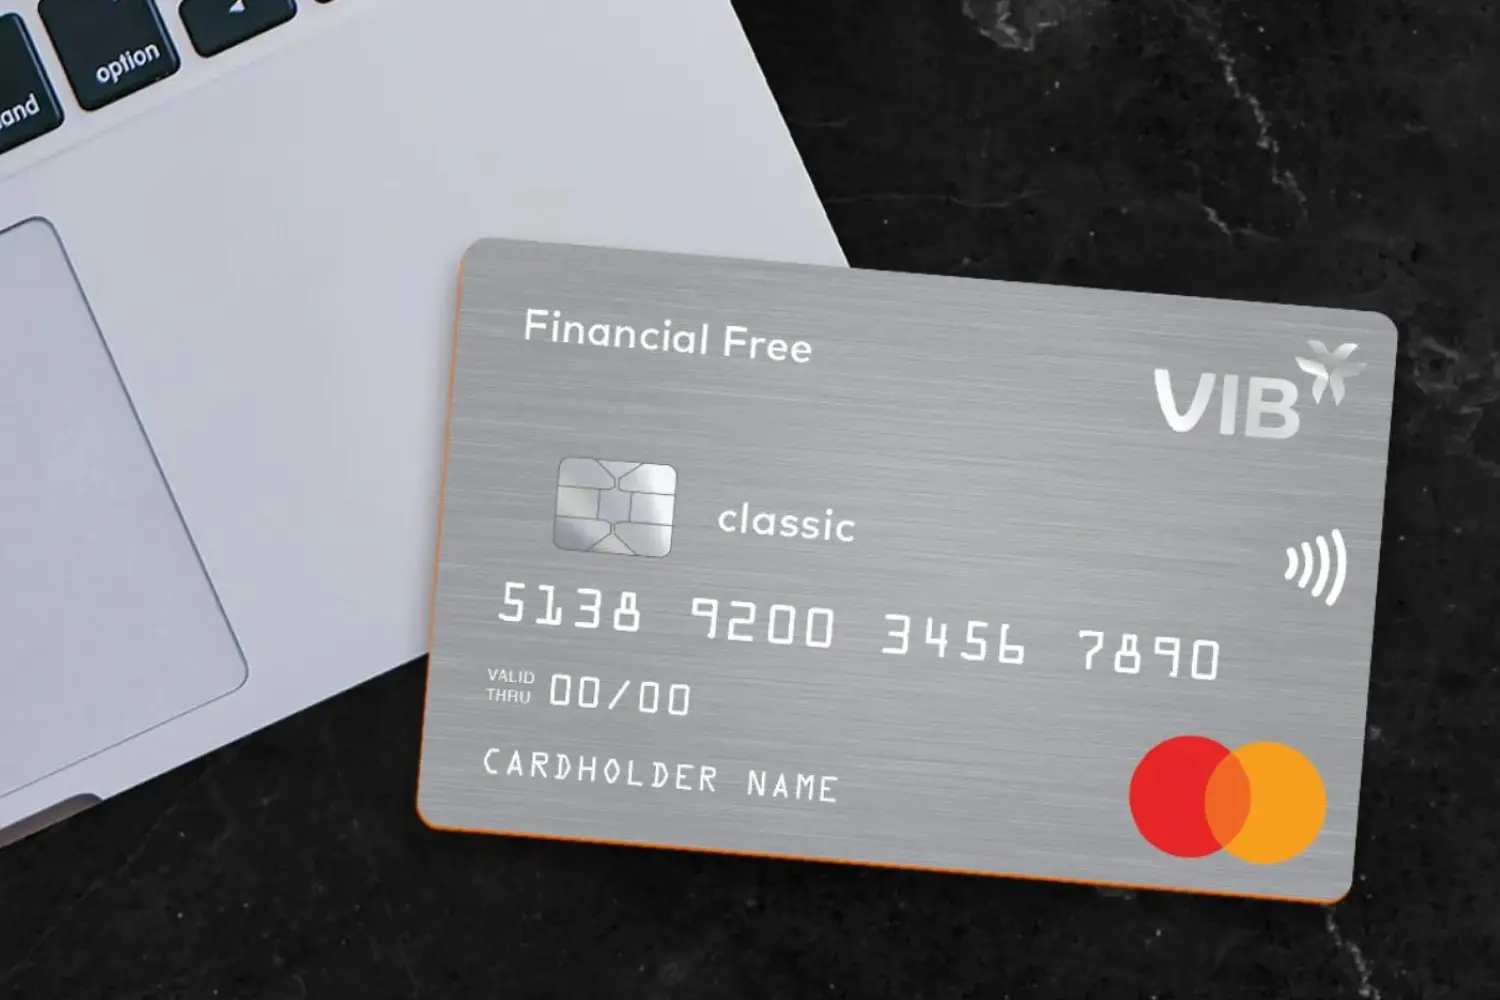 Thẻ tín dụng VIB Financial Free